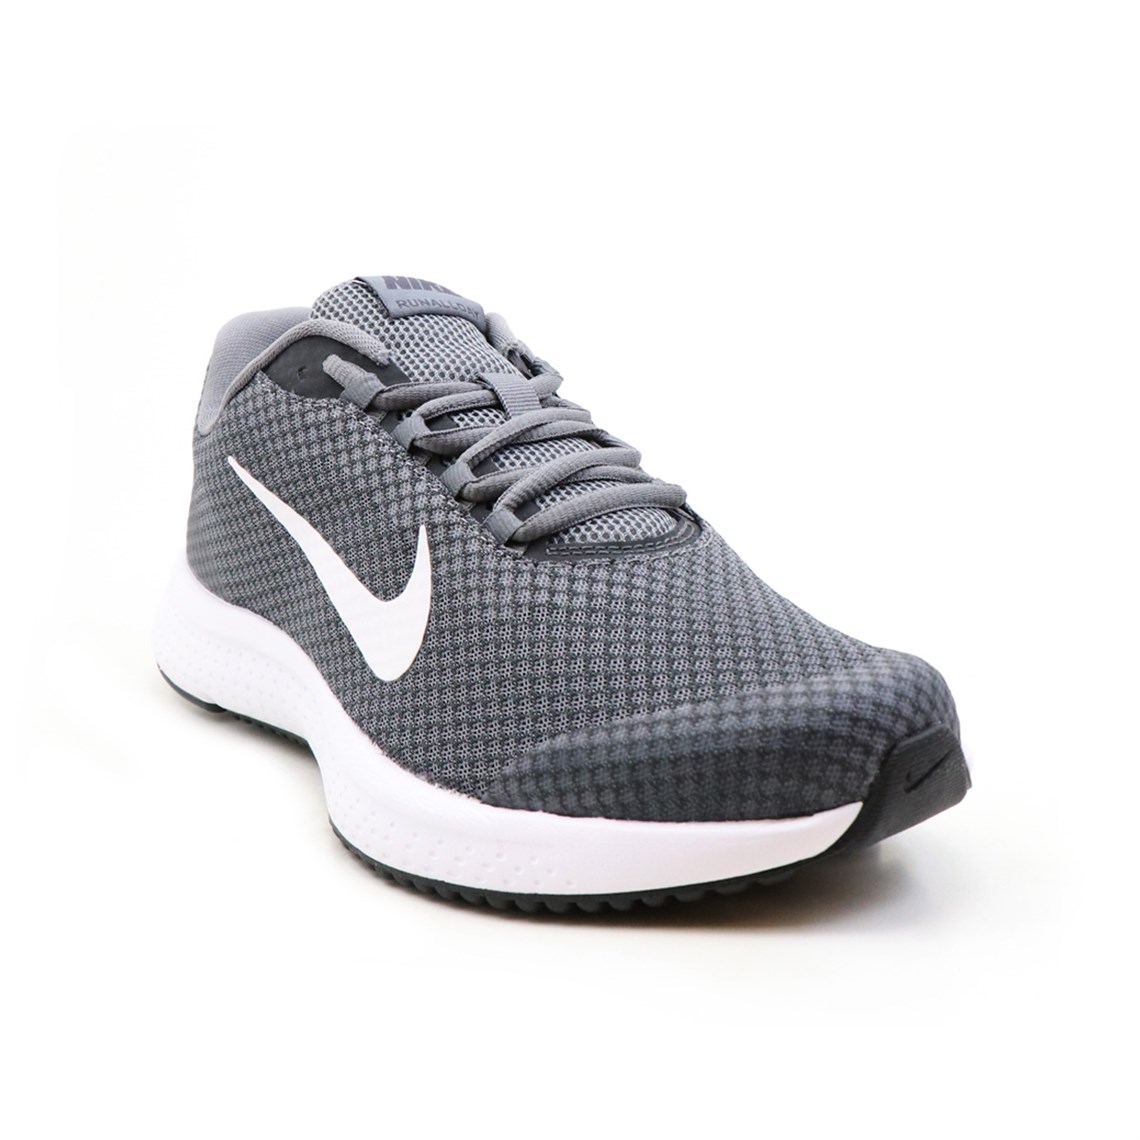 Nike Günlük Koşu Yürüyüş Gri Byz Erkek Spor Ayakkabı 898464-013